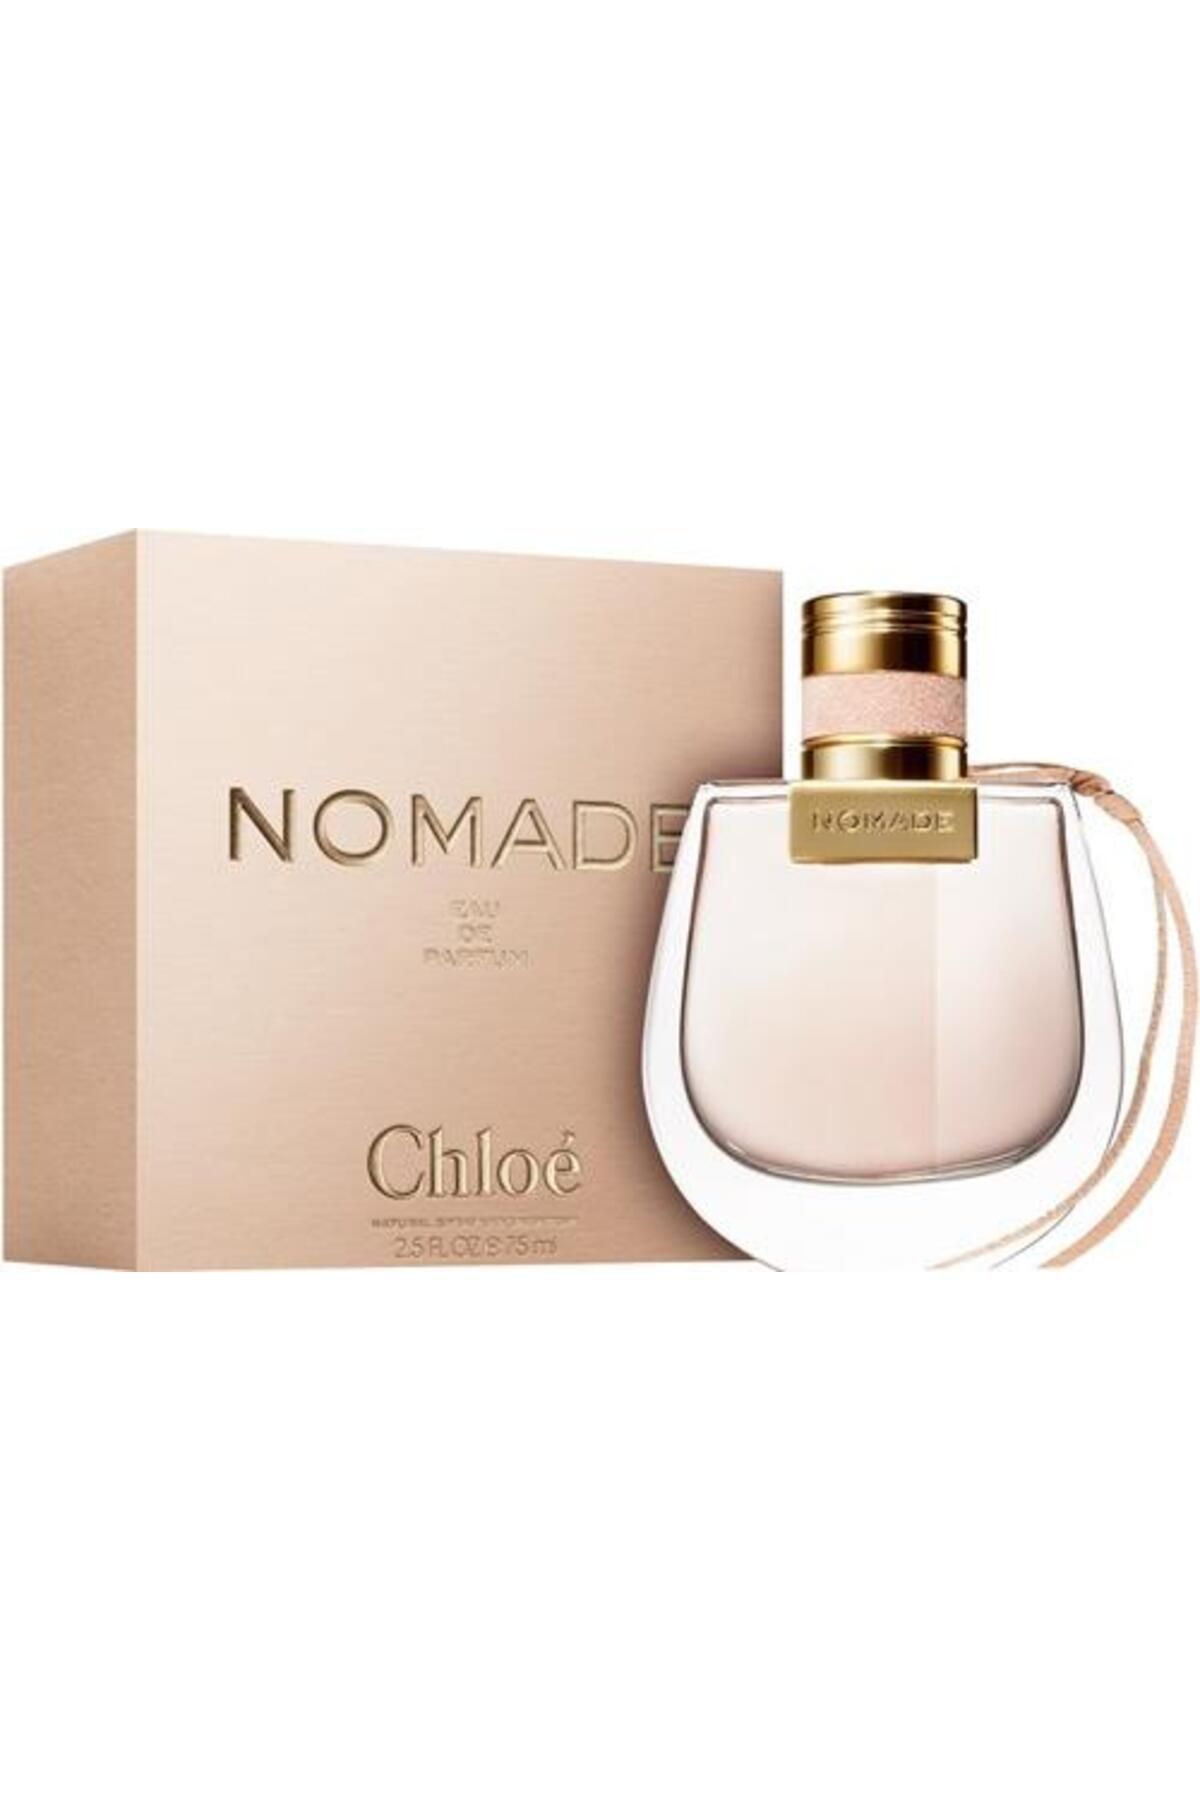 CHLOE Nomade Kadın Parfümü Edp 75 Ml